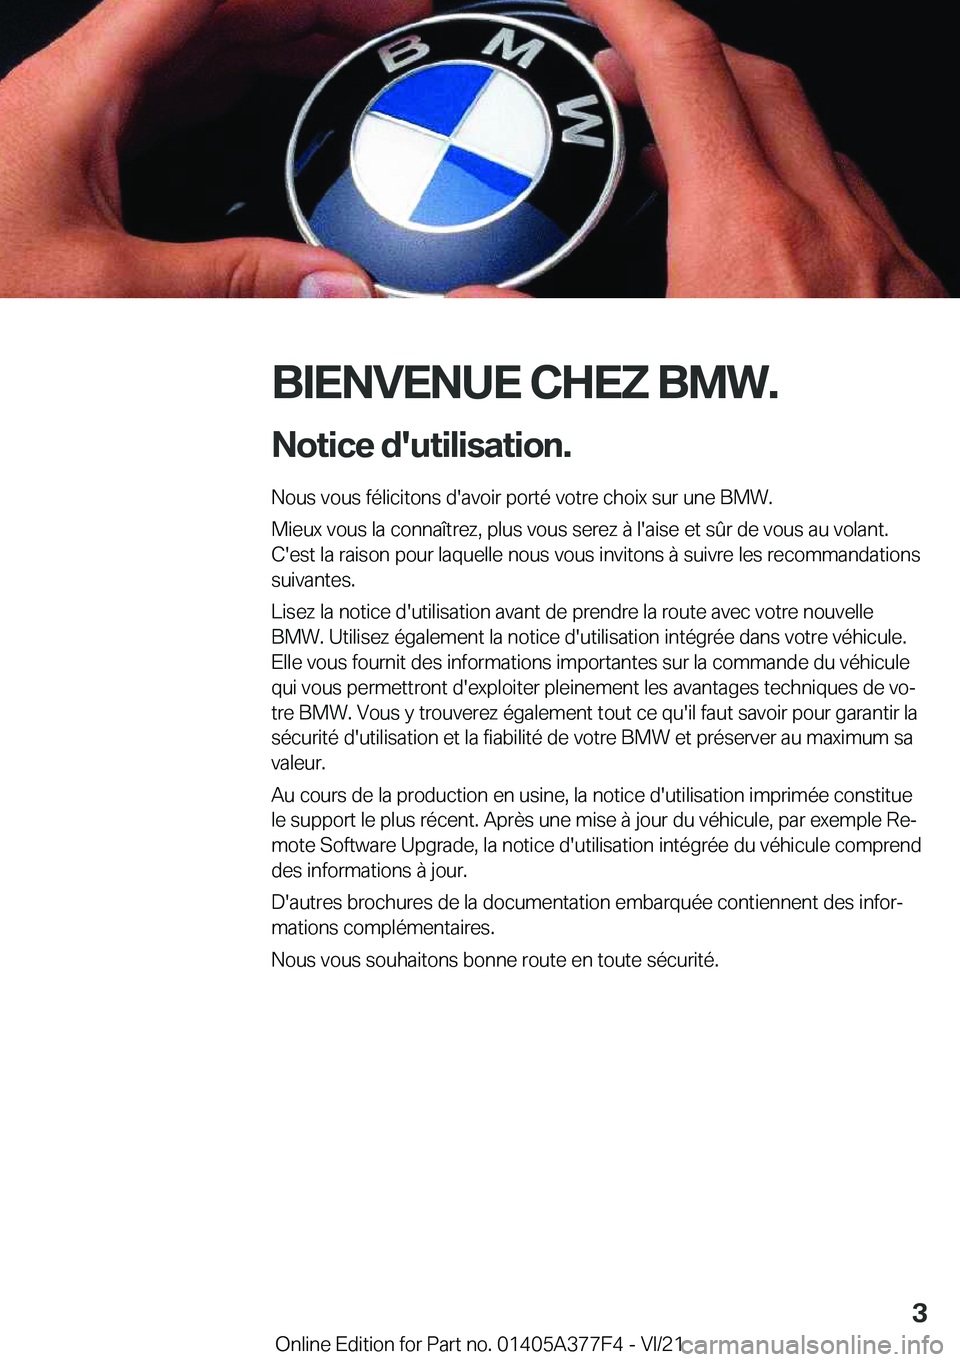 BMW X3 M 2022  Notices Demploi (in French) �B�I�E�N�V�E�N�U�E��C�H�E�Z��B�M�W�.�N�o�t�i�c�e��d�'�u�t�i�l�i�s�a�t�i�o�n�.
�N�o�u�s��v�o�u�s��f�é�l�i�c�i�t�o�n�s��d�'�a�v�o�i�r��p�o�r�t�é��v�o�t�r�e��c�h�o�i�x��s�u�r��u�n�e�